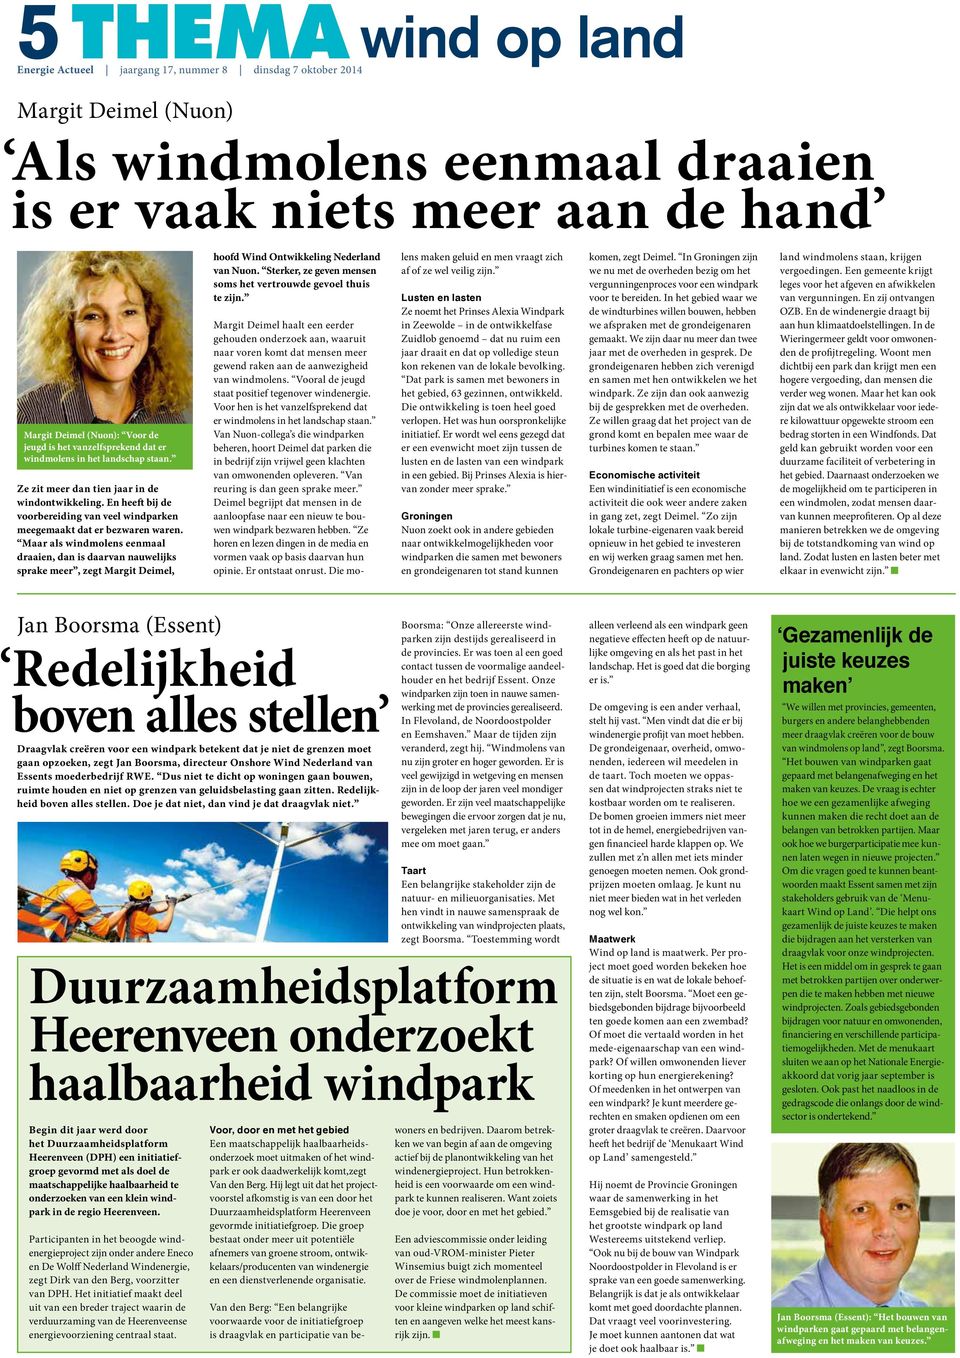 Maar als windmolens eenmaal draaien, dan is daarvan nauwelijks sprake meer, zegt Margit Deimel, hoofd Wind Ontwikkeling Nederland van Nuon.